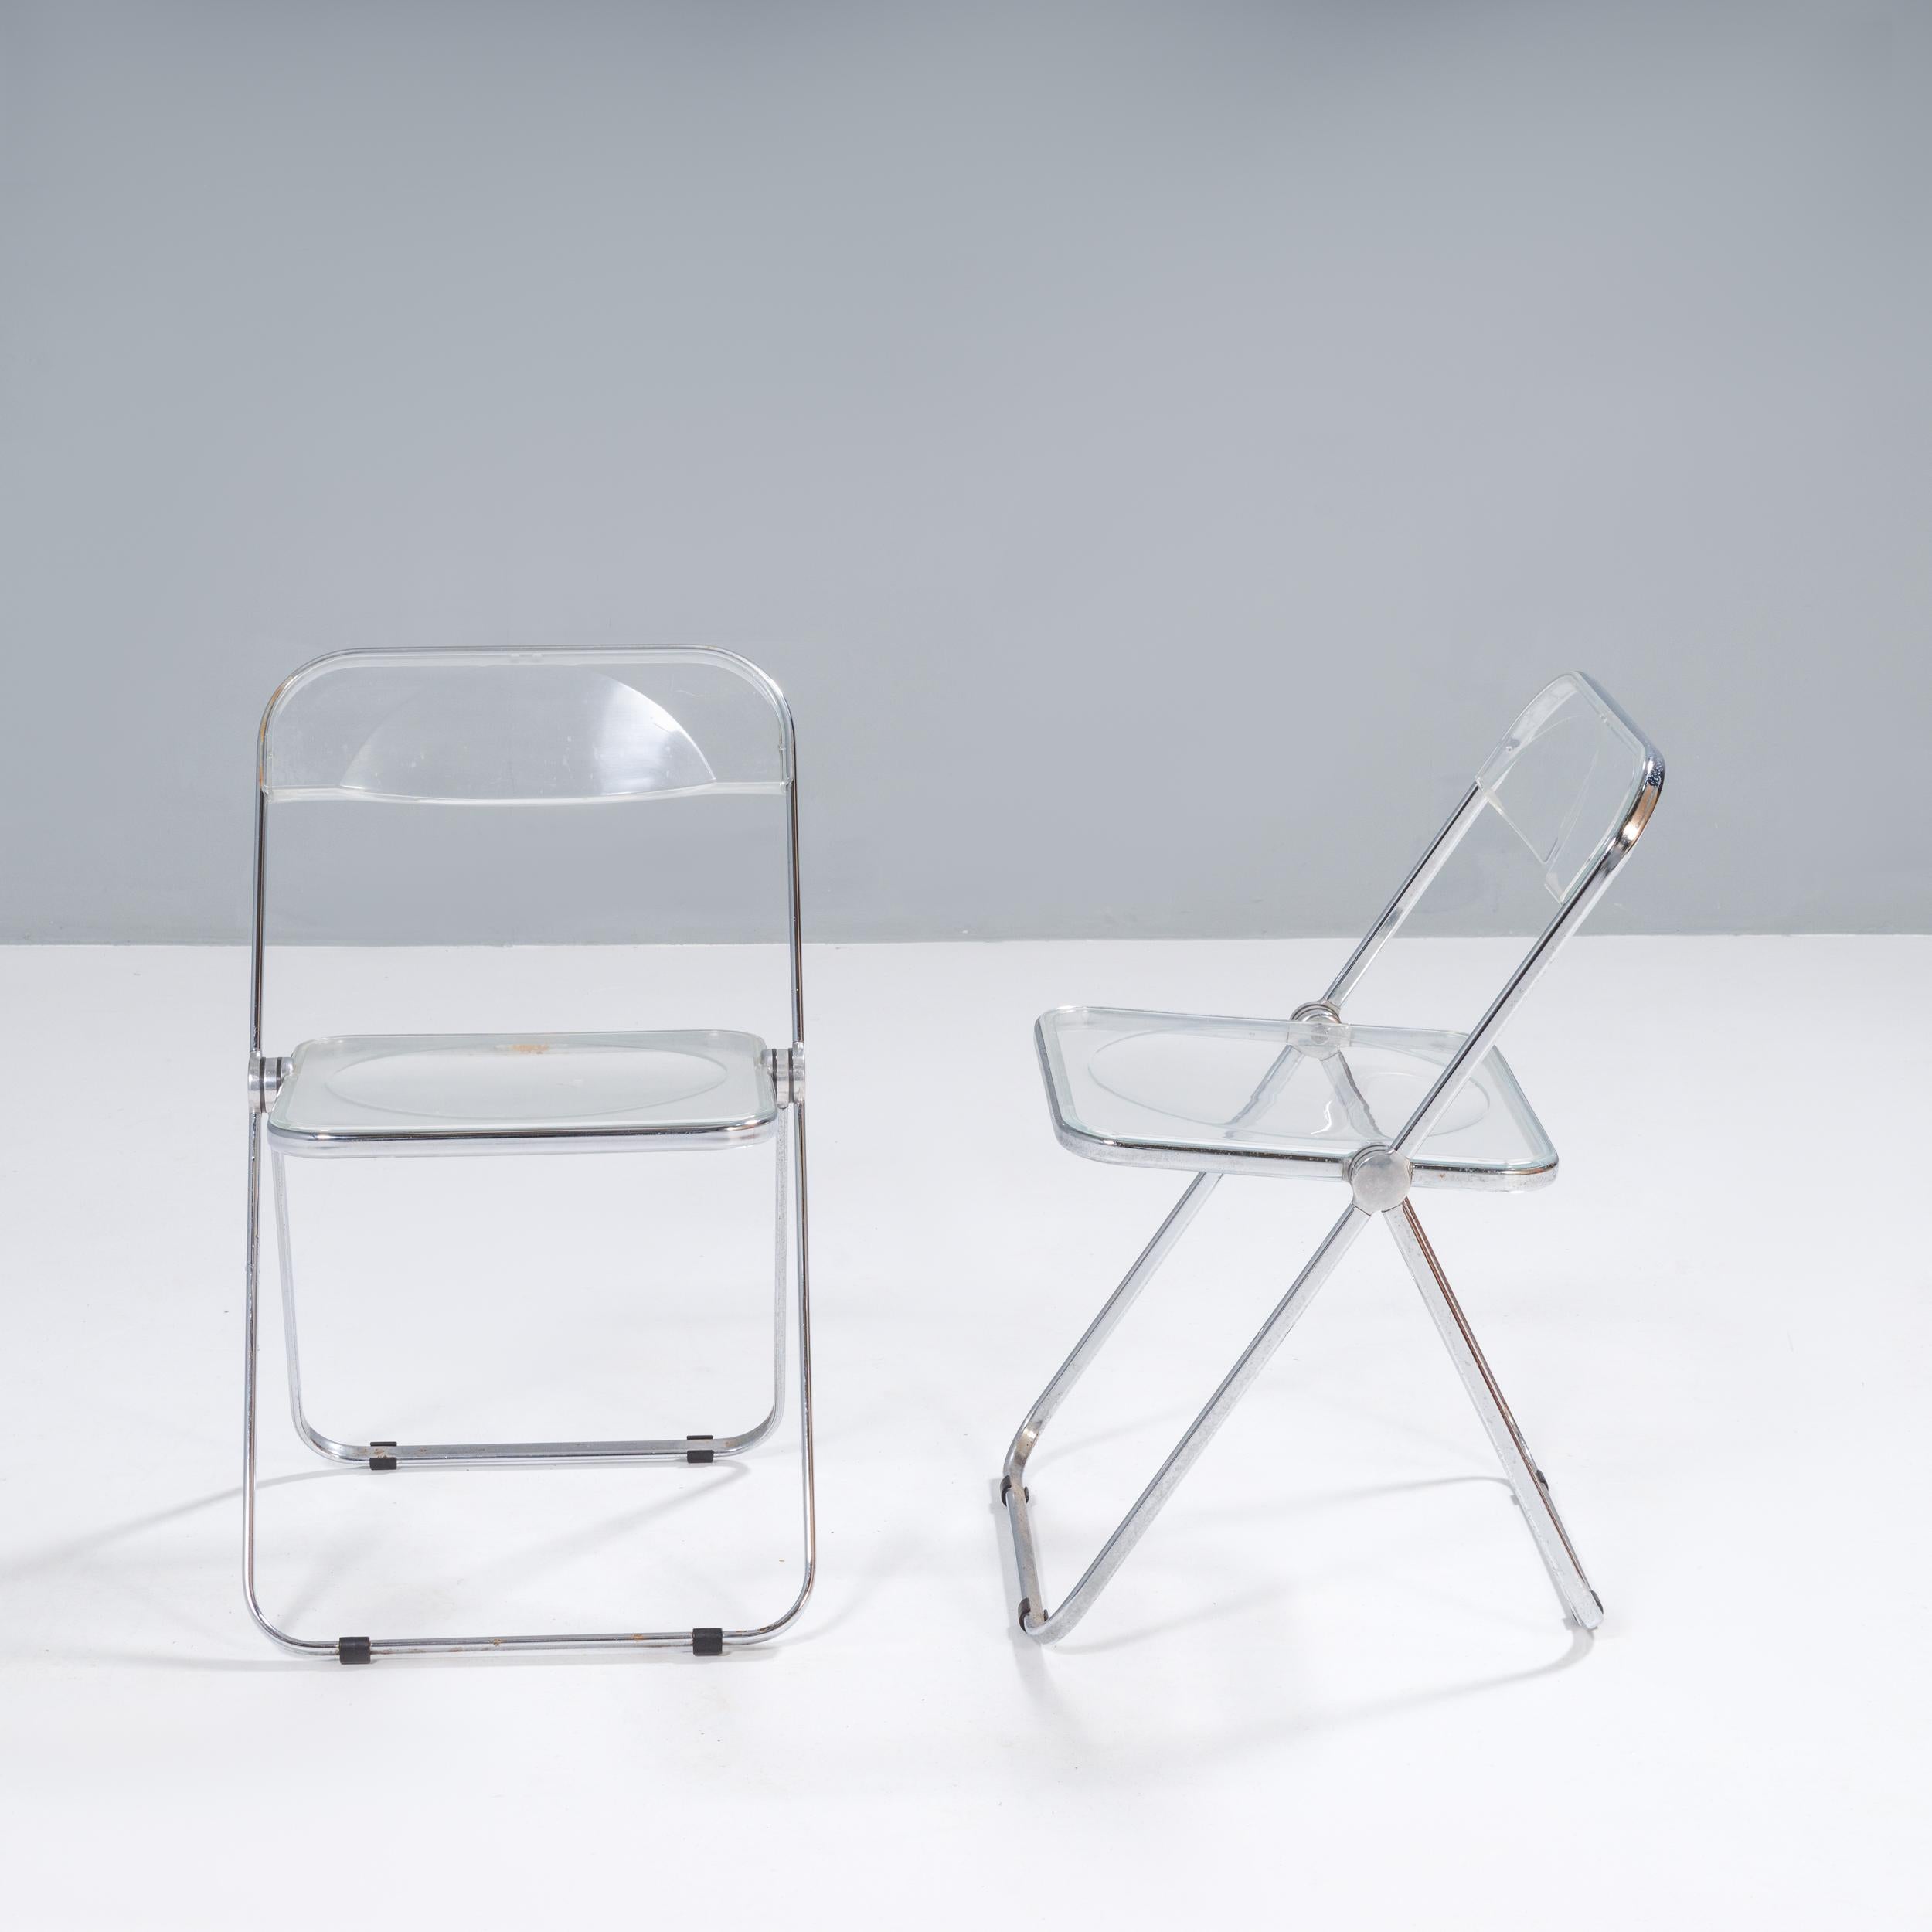 Der ursprünglich von Giancarlo Piretti für Catelli 1967 entworfene Plia-Stuhl wurde auf der Fiera del Mobile in Mailand vorgestellt und hat sich seitdem zu einem der bekanntesten Stühle des 20. Jahrhunderts entwickelt.

Der Plia-Stuhl war der erste